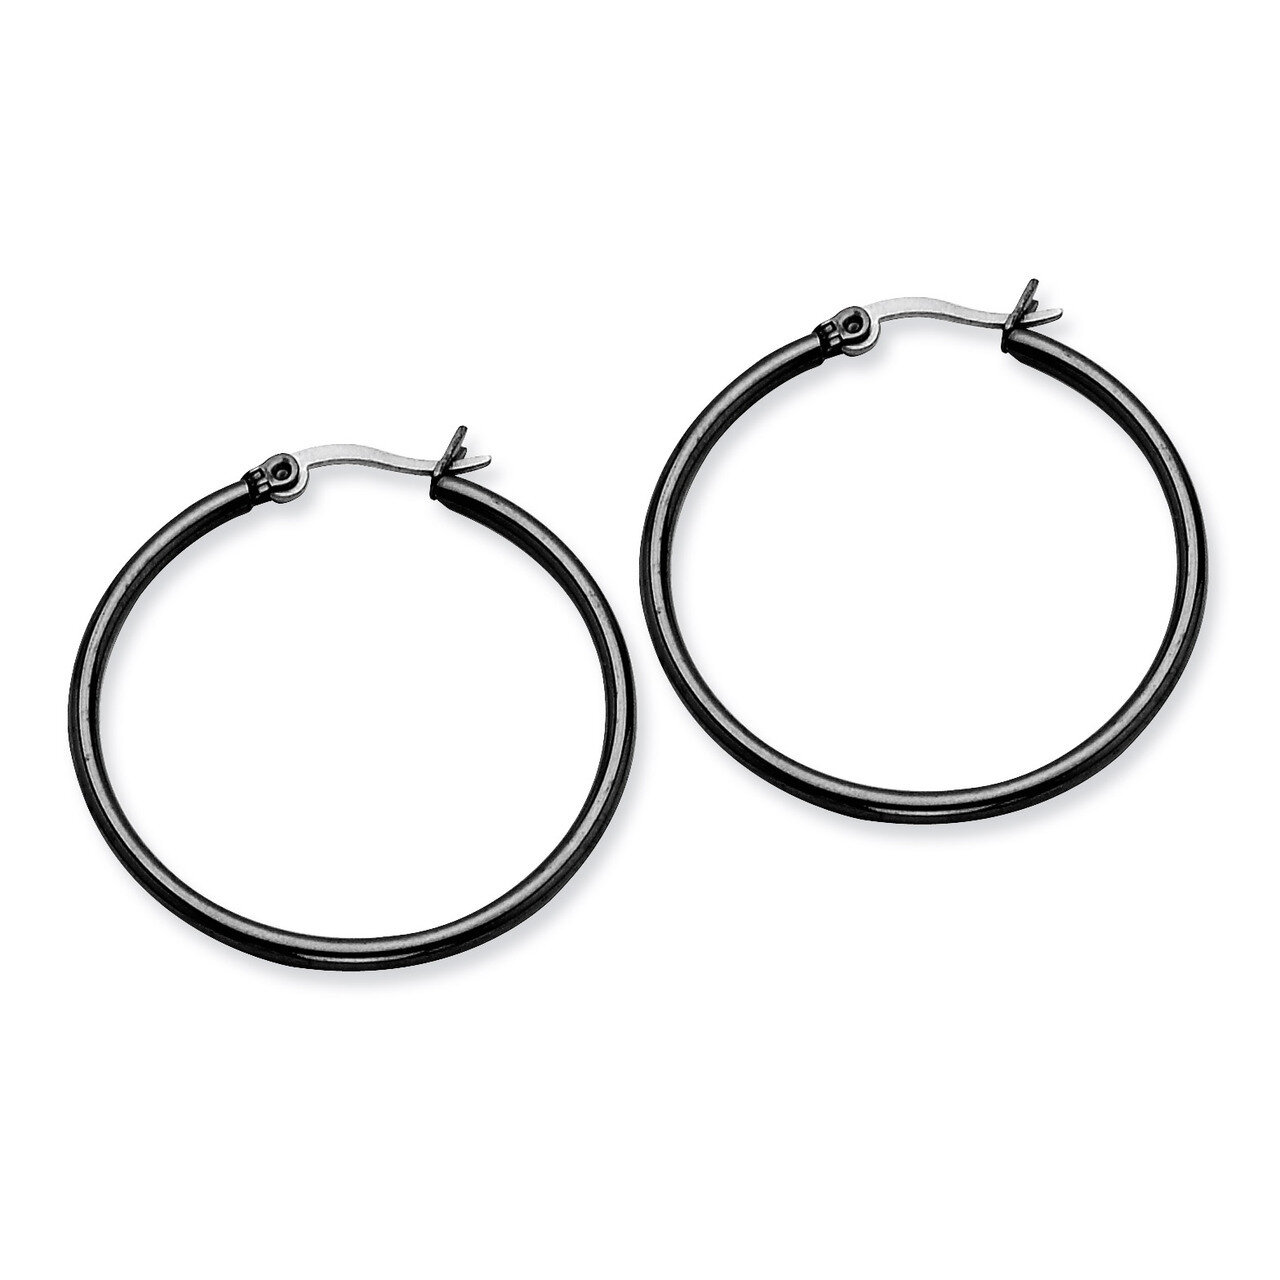 Black IP plated 32mm Hoop Earrings - Stainless Steel SRE567